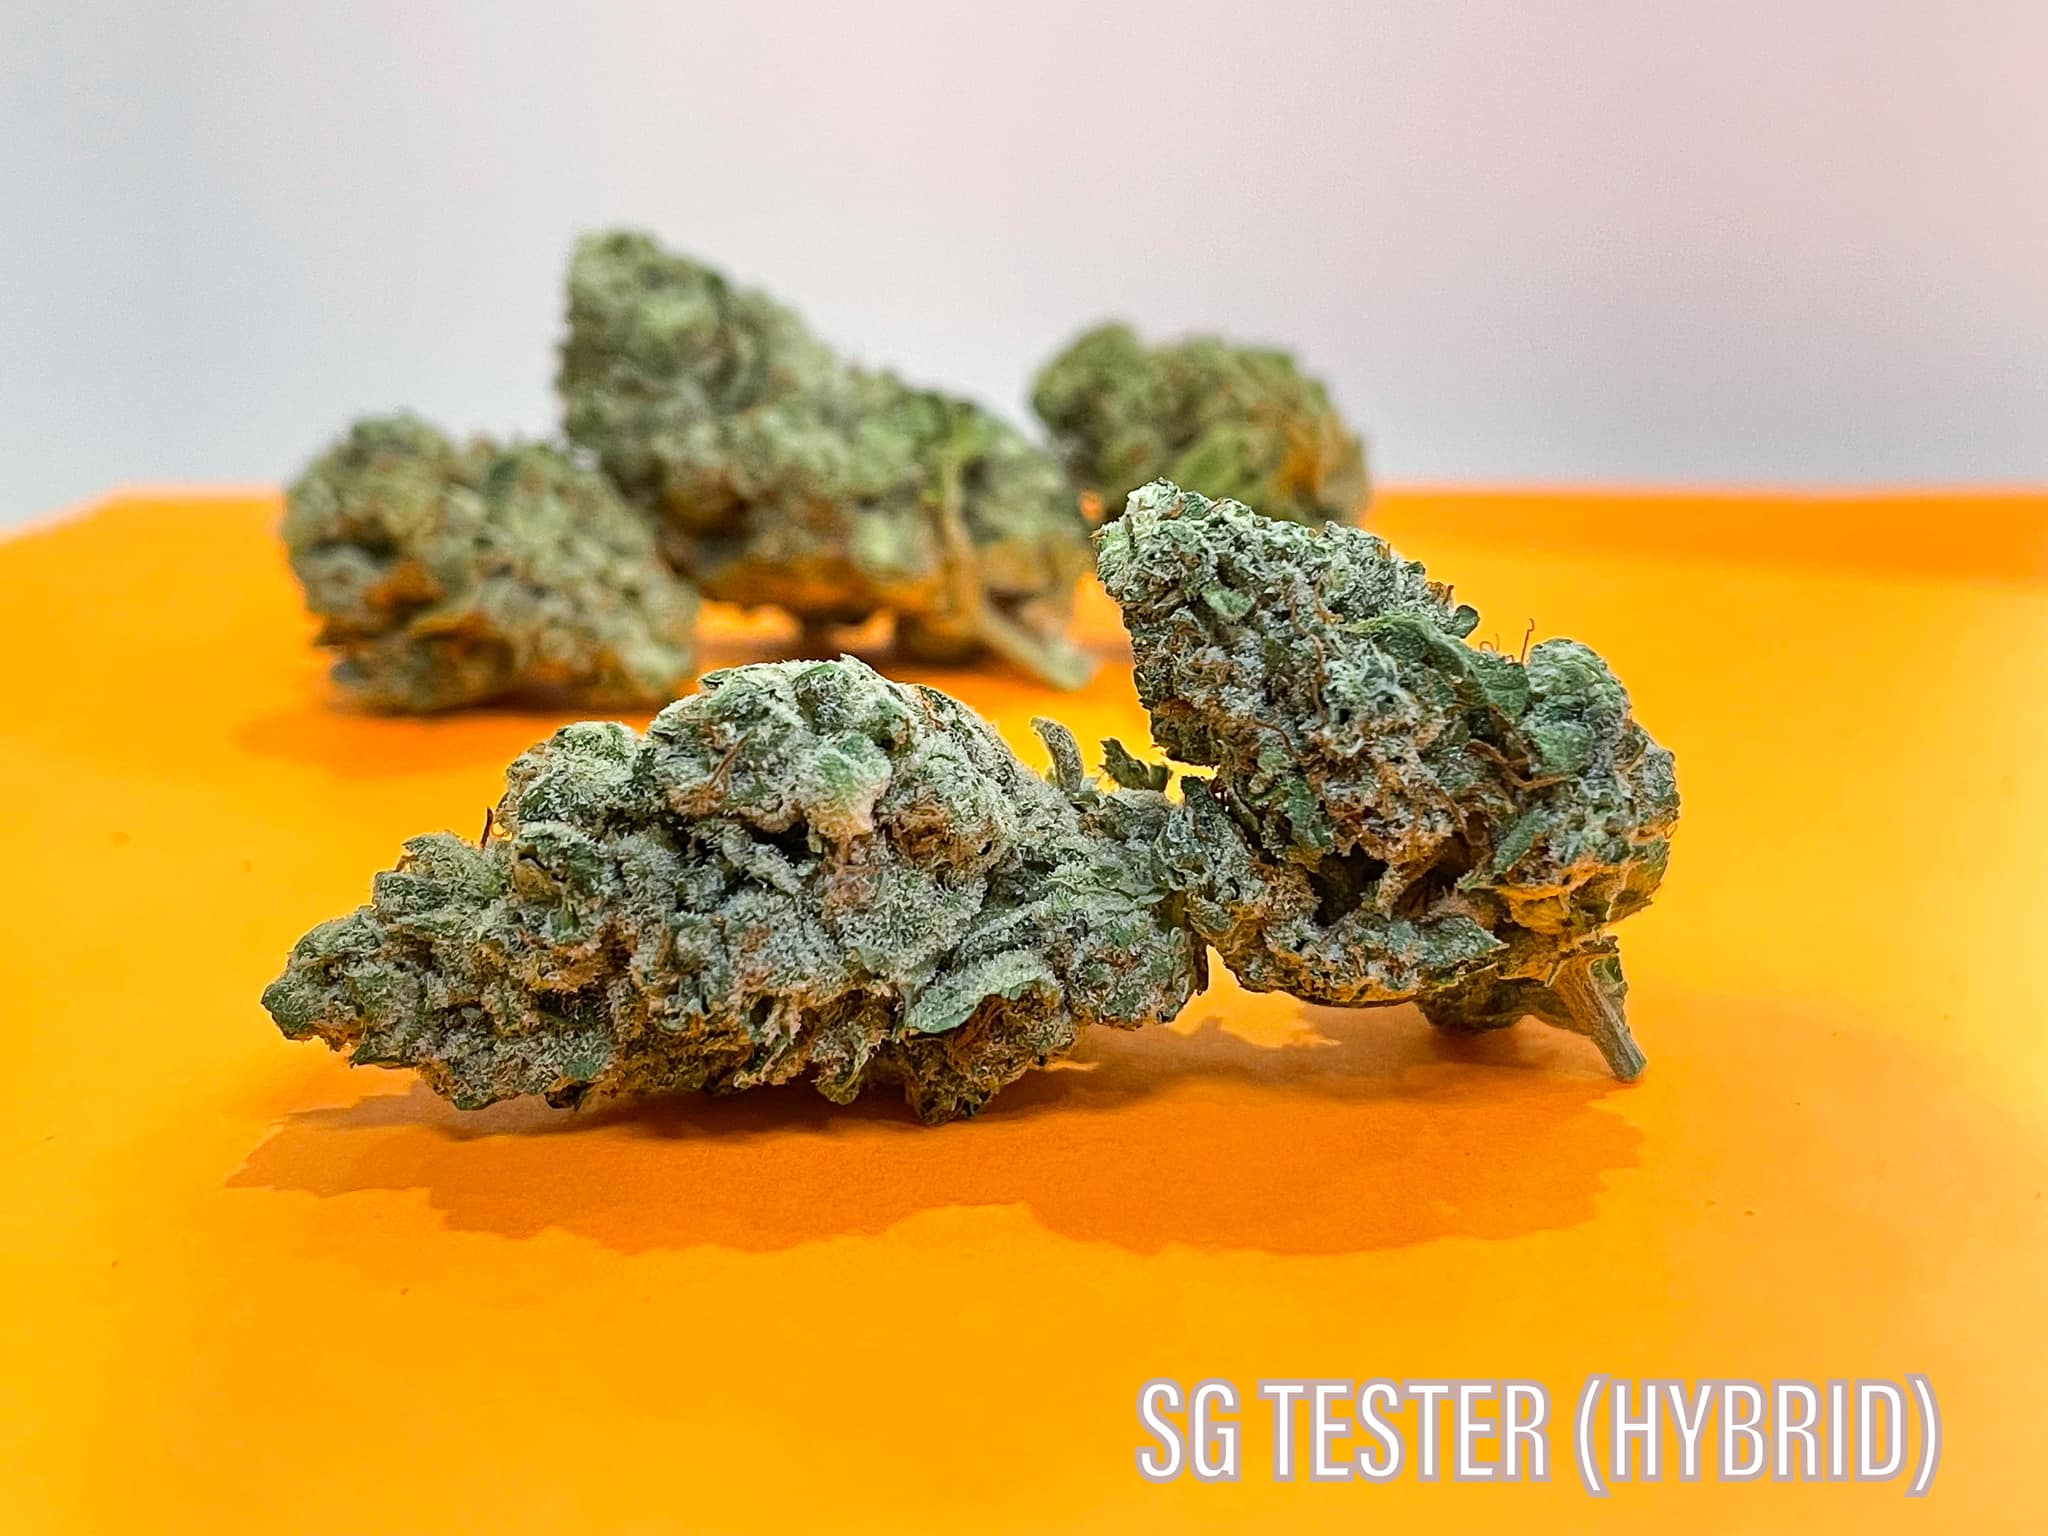 SG Tester Hybrid Sunday Goods strain